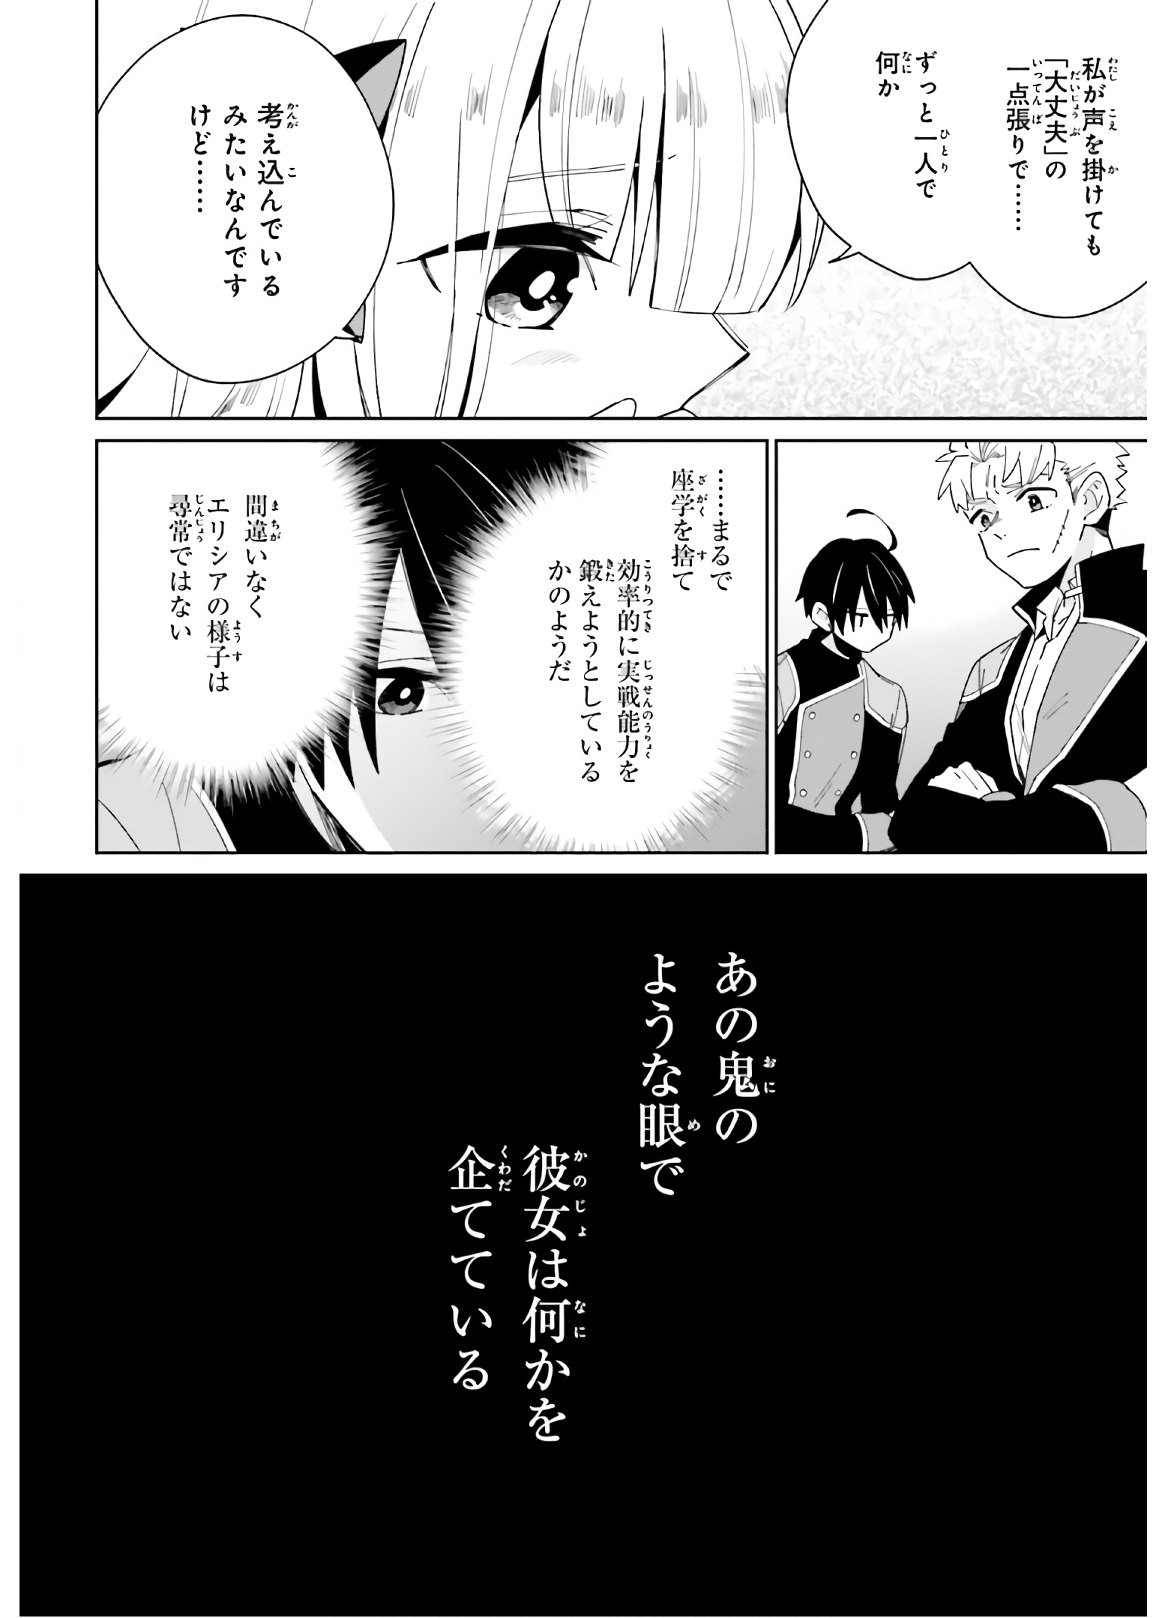 Kage-no-Eiyuu-no-Nichijou-tan-Ichi-no-Yuusha-no-Ura-de-An'yaku-Shite-ita-Saikyou-no-Eijento-Soshiki-ga-Kaitai-sareta-no-de-Shoutai-Kakushite-Hito-nami-no-Nichijou-o-Ouka-suru - Chapter 06 - Page 26